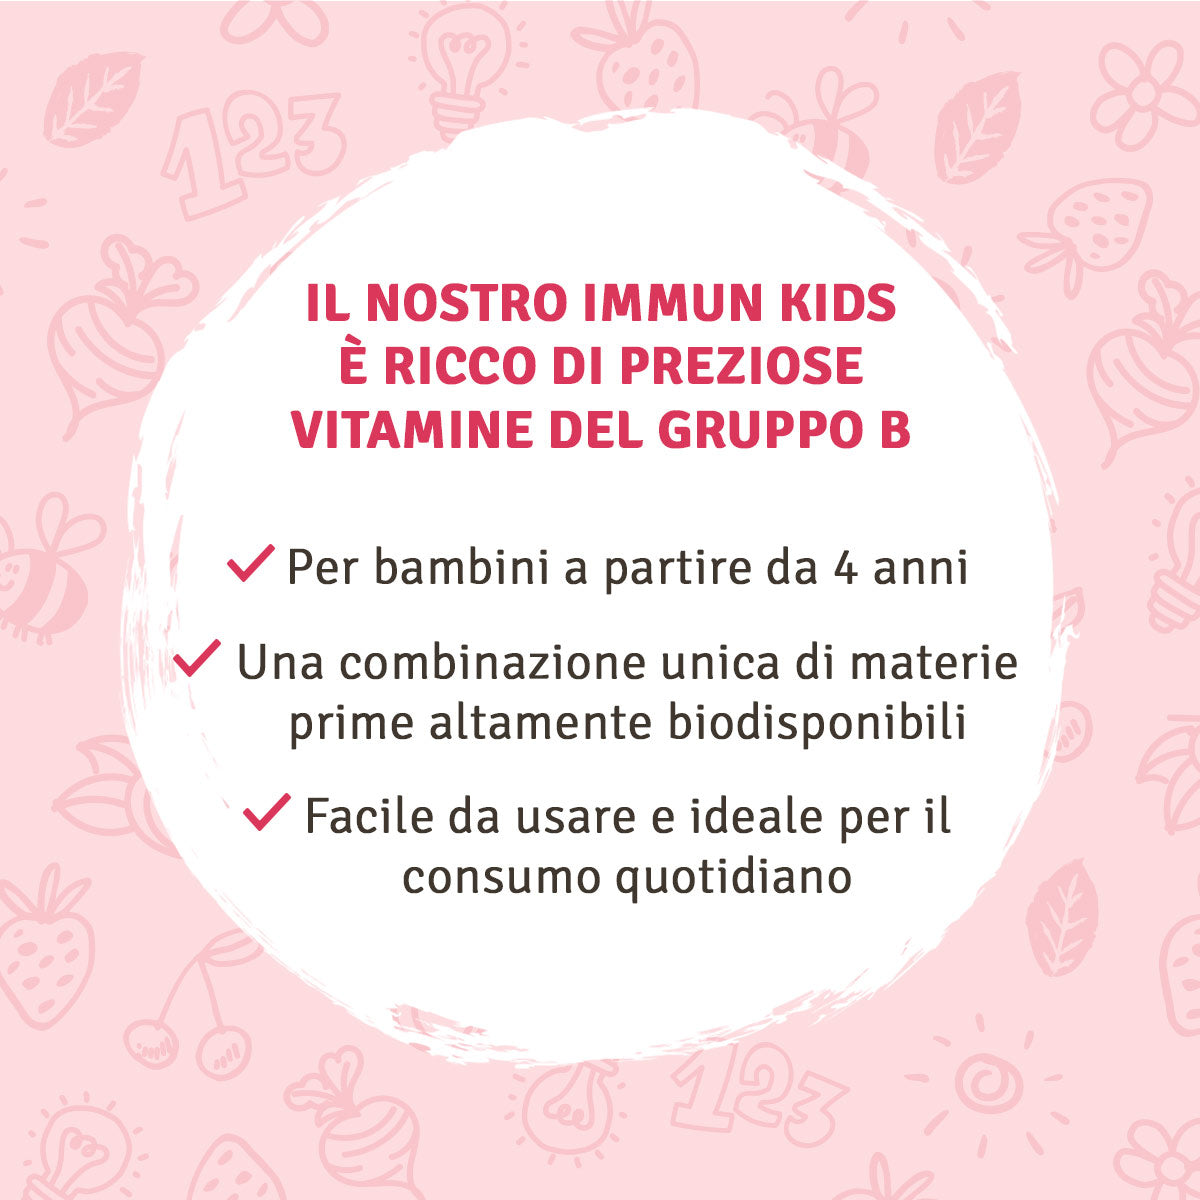 Difesa sistema immunitario: Per bambini, barbabietola rossa, beta-glucano, germogli di grano saraceno ed acerola, in polvere